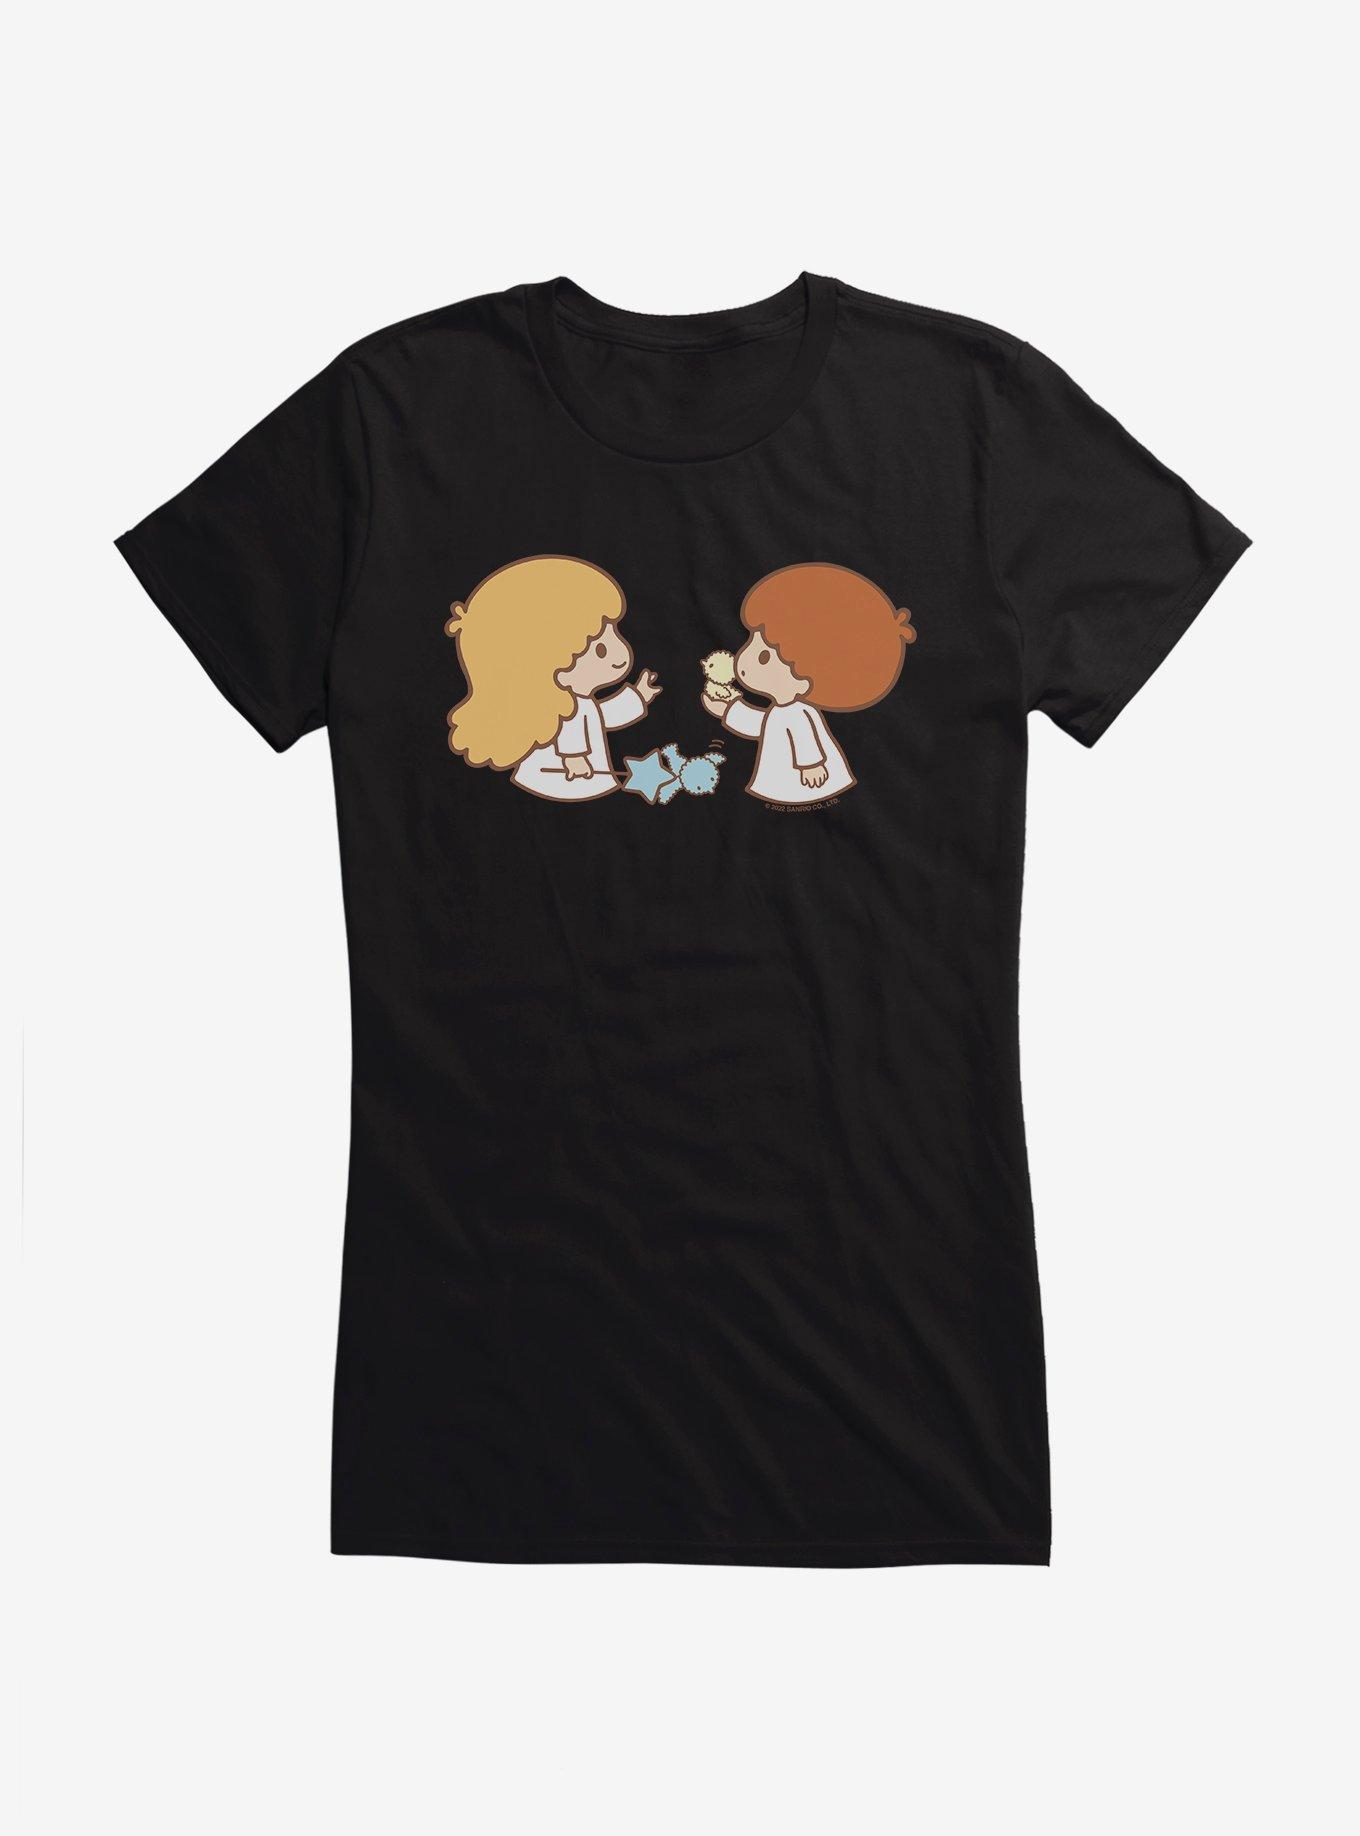 Little Twin Stars Birds & The Outdoors Girls T-Shirt